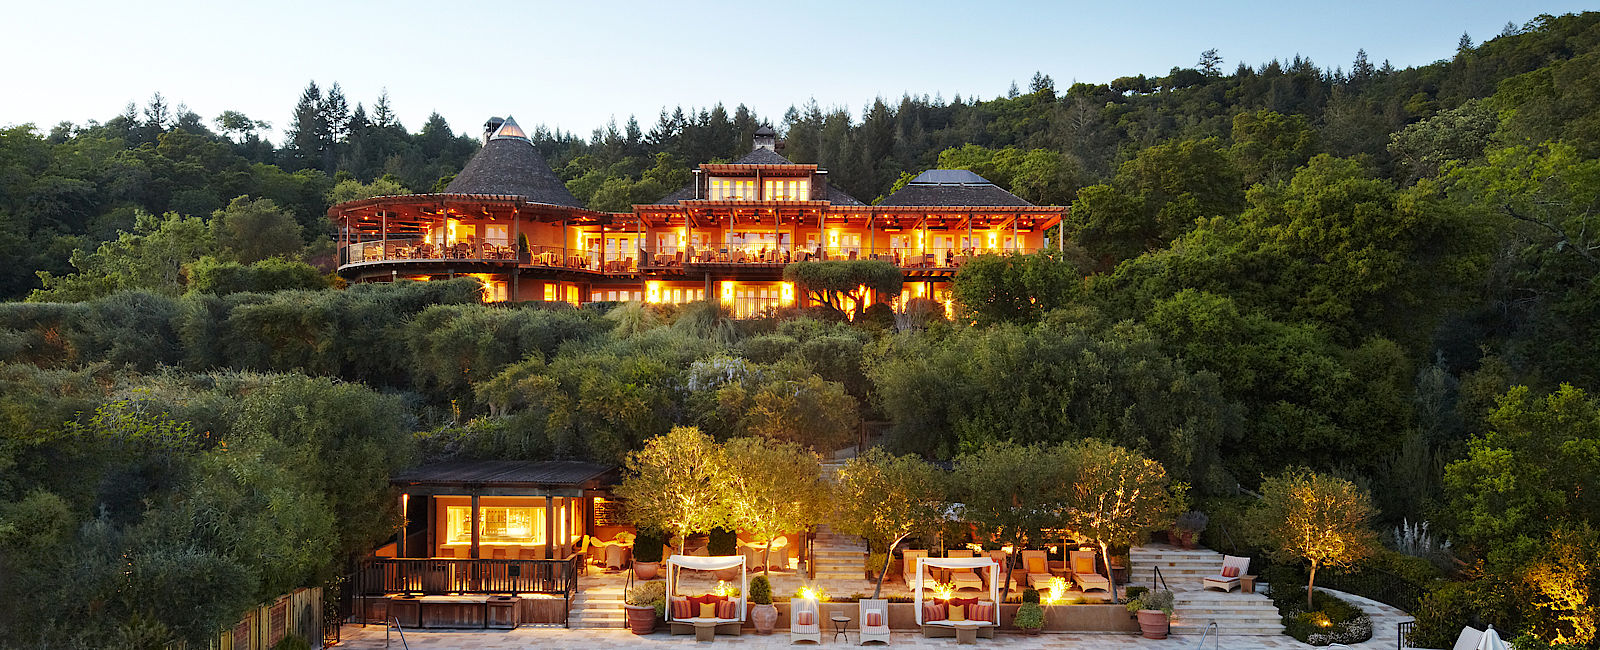 HOTEL TIPPS
 Auberge du Soleil 
 Luxuriöses Anwesen in den Wäldern von Napa Valley 